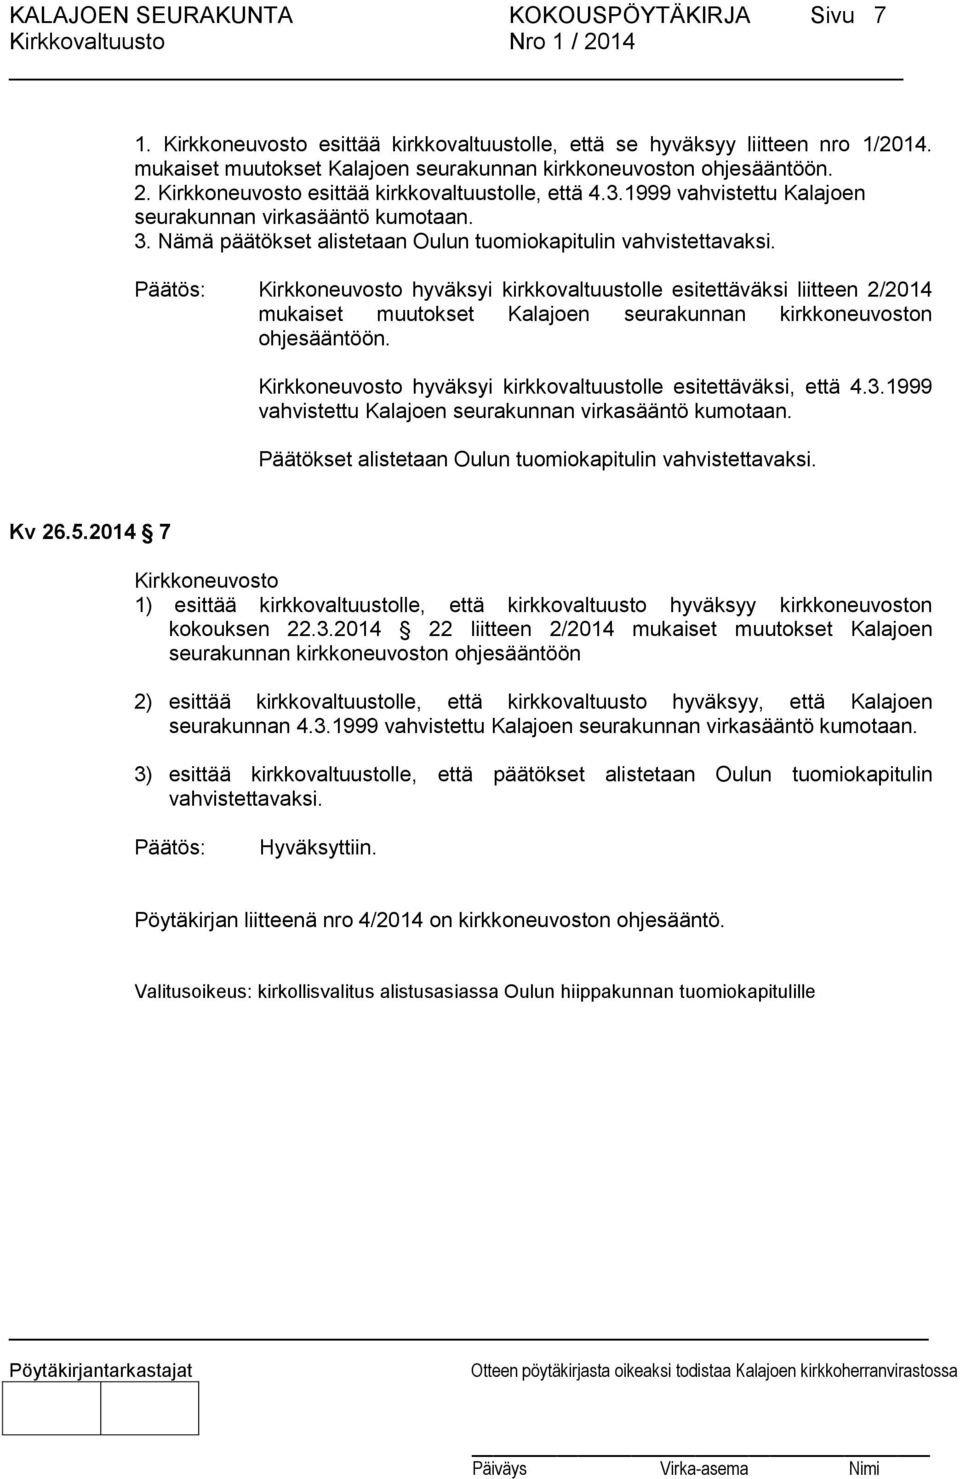 Kirkkoneuvosto hyväksyi kirkkovaltuustolle esitettäväksi liitteen 2/2014 mukaiset muutokset Kalajoen seurakunnan kirkkoneuvoston ohjesääntöön.